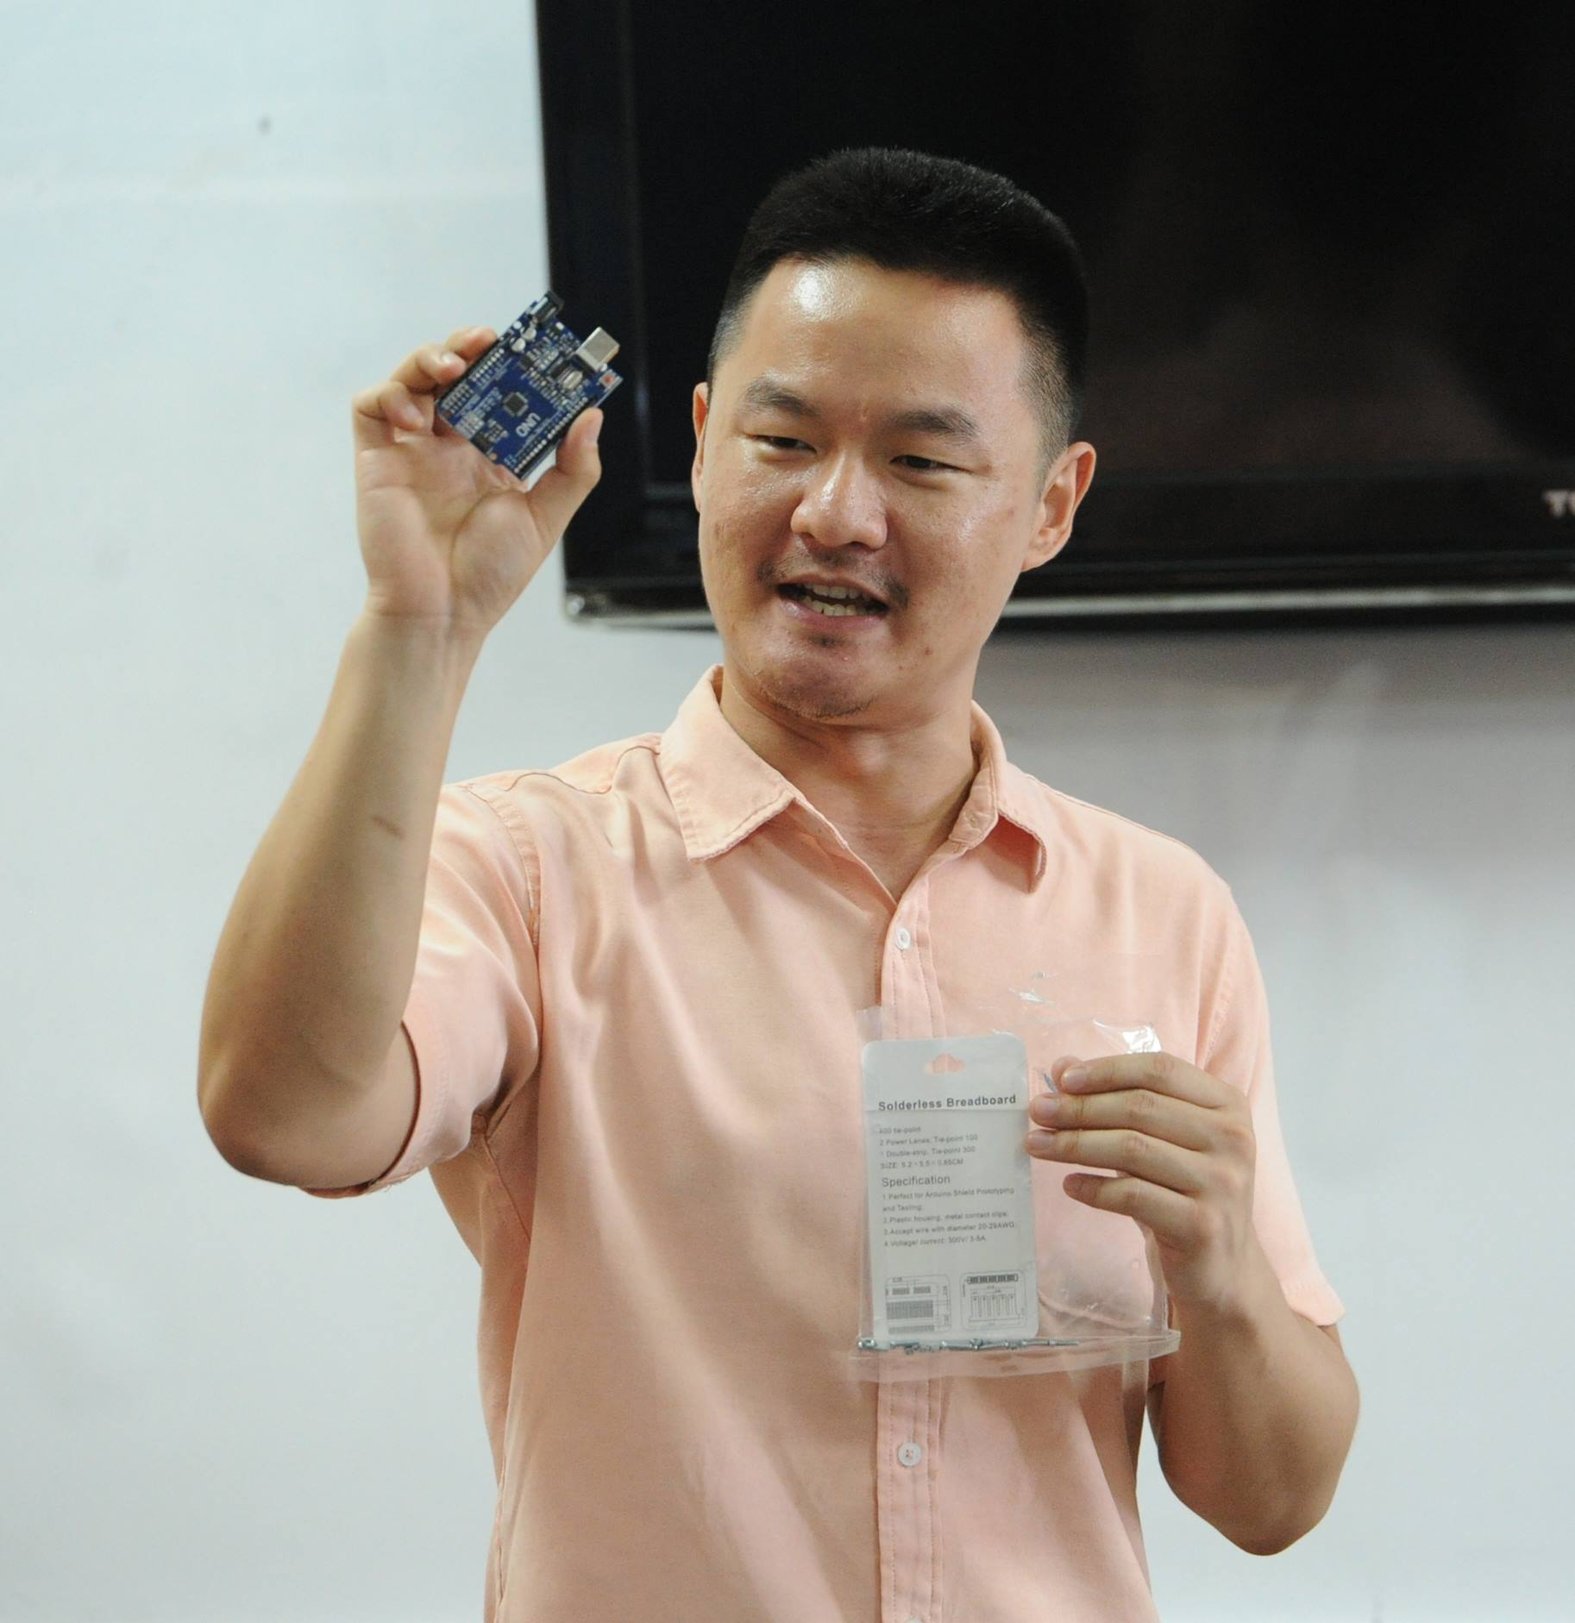 沈文威教授小学生编写与操作“Arduino”。那是一种开放原始码的单晶片微控制器，可 控制各种电子装置，如LED灯号、开关、红外线感应器等。（摄影：徐慧美）